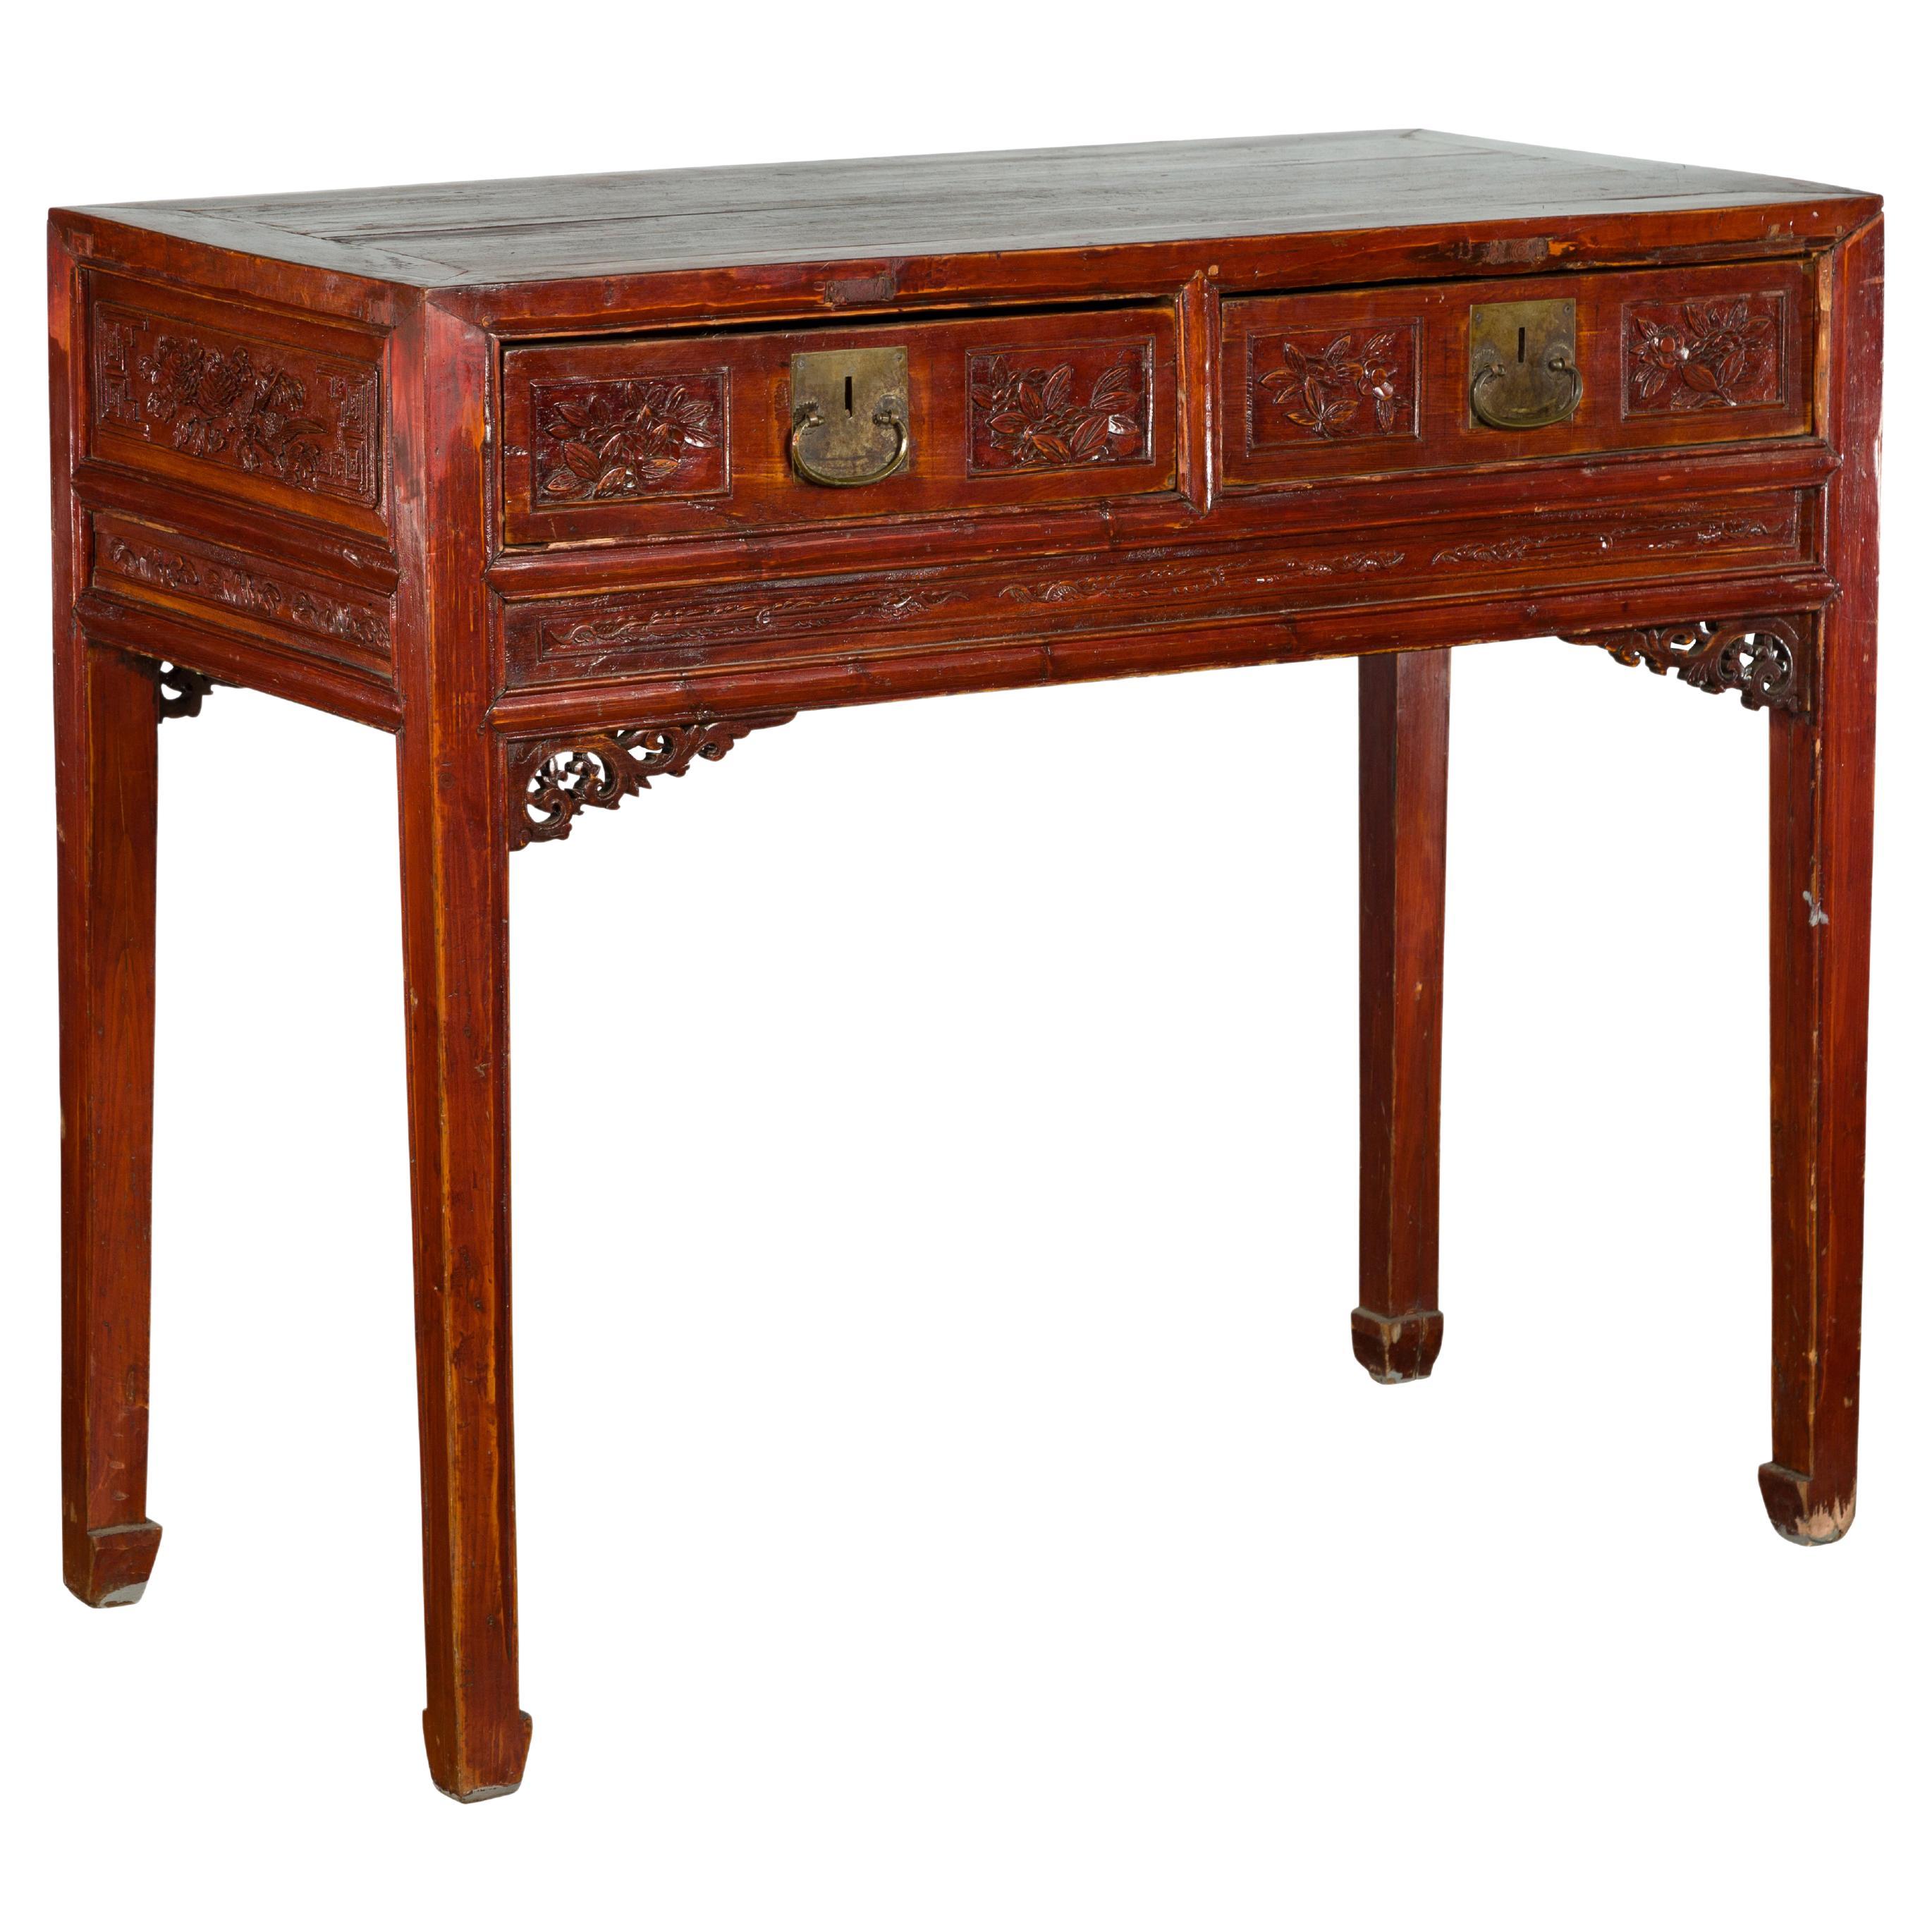 Chinesischer rotbrauner Tisch aus der chinesischen Qing-Dynastie des 19. Jahrhunderts mit zwei Schubladen